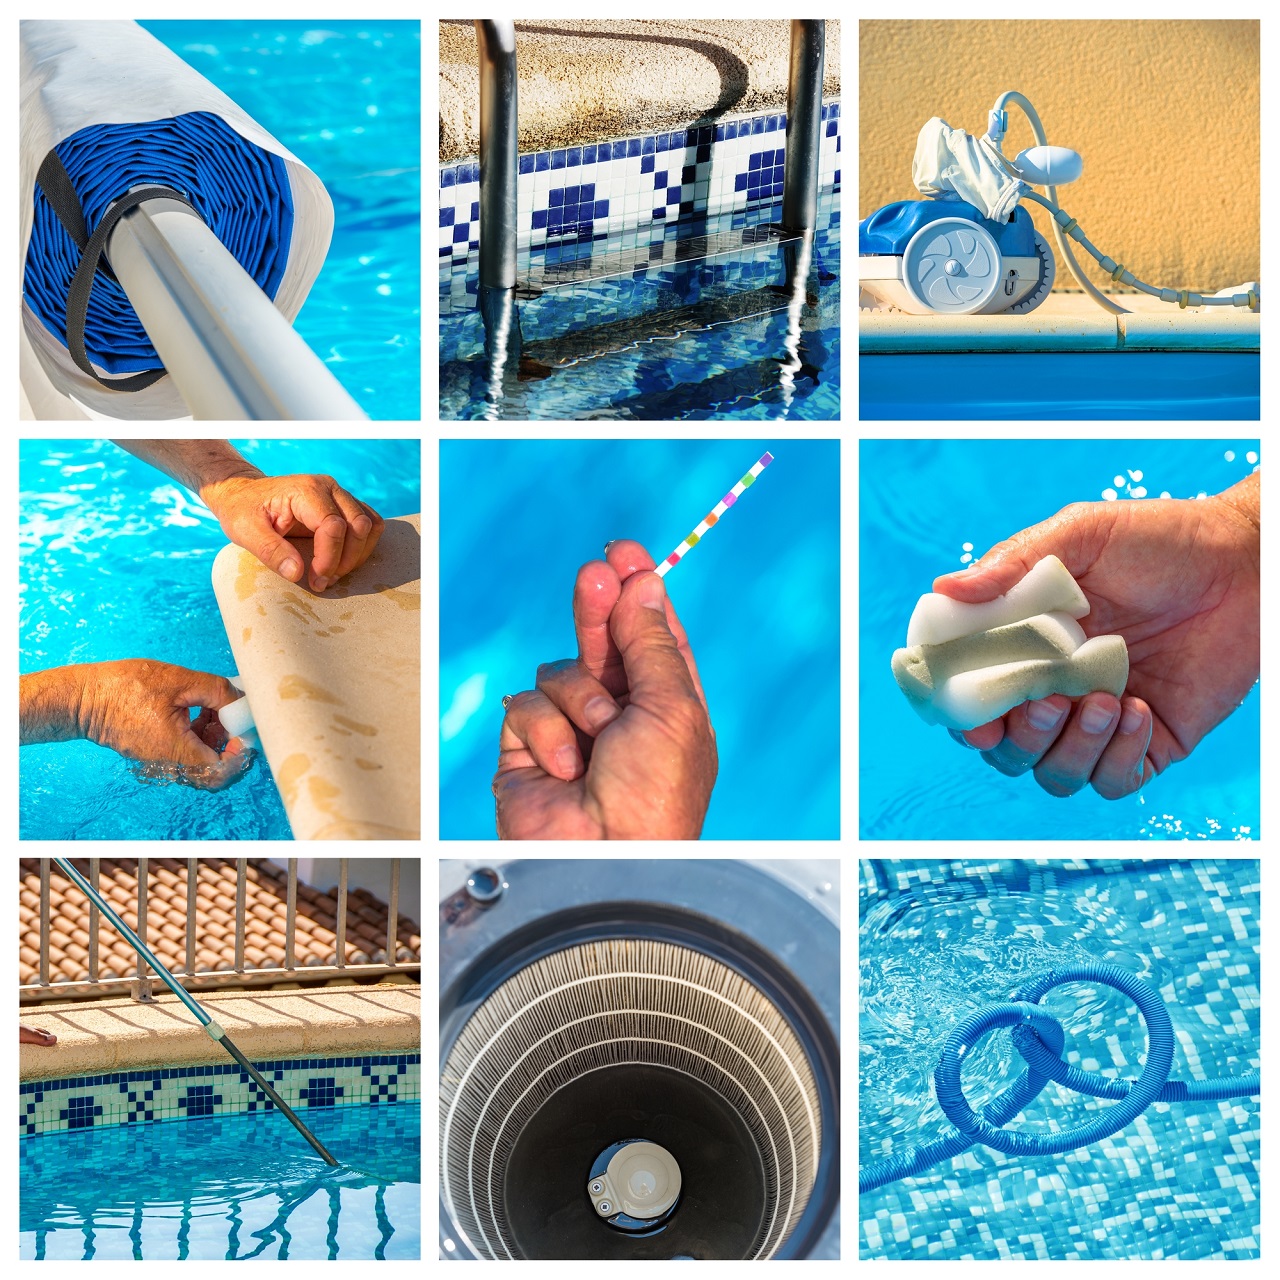 mantinimiento collage de una piscina privada - cobertor de verano